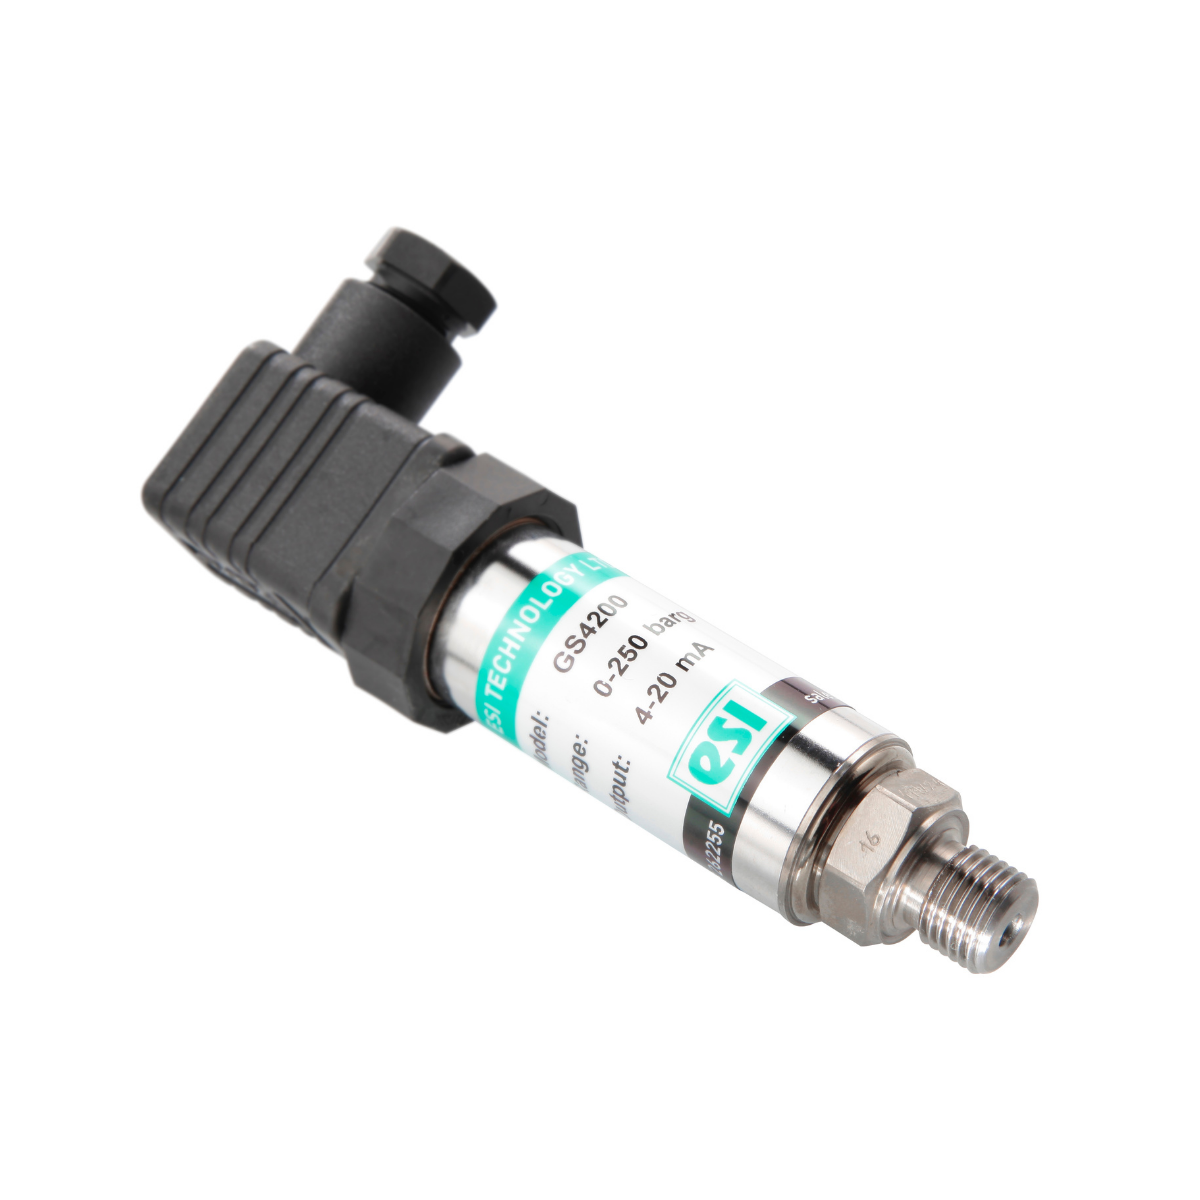 ESI GS4200-0700AB 4-20mA Pressure Transducer